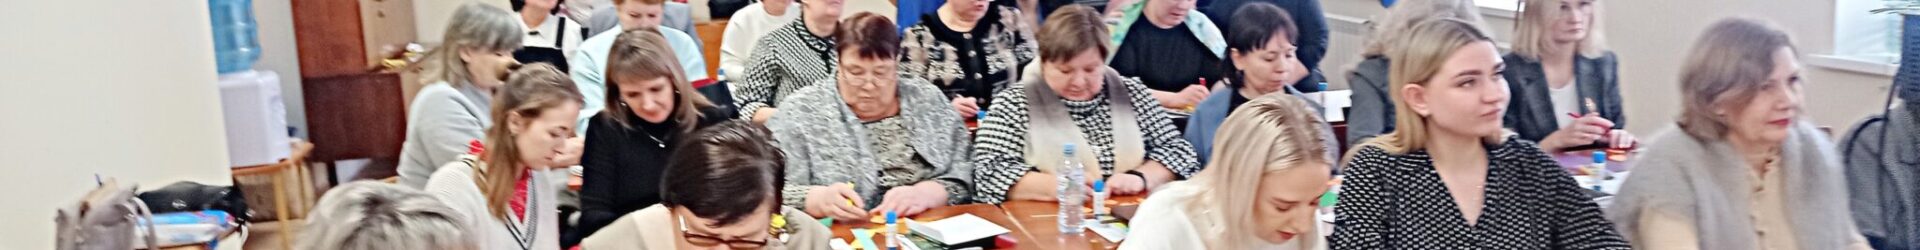 В Духовно-просветительском центре г. Павлово состоялся семинар для учителей, ведущих курс ОРКСЭ